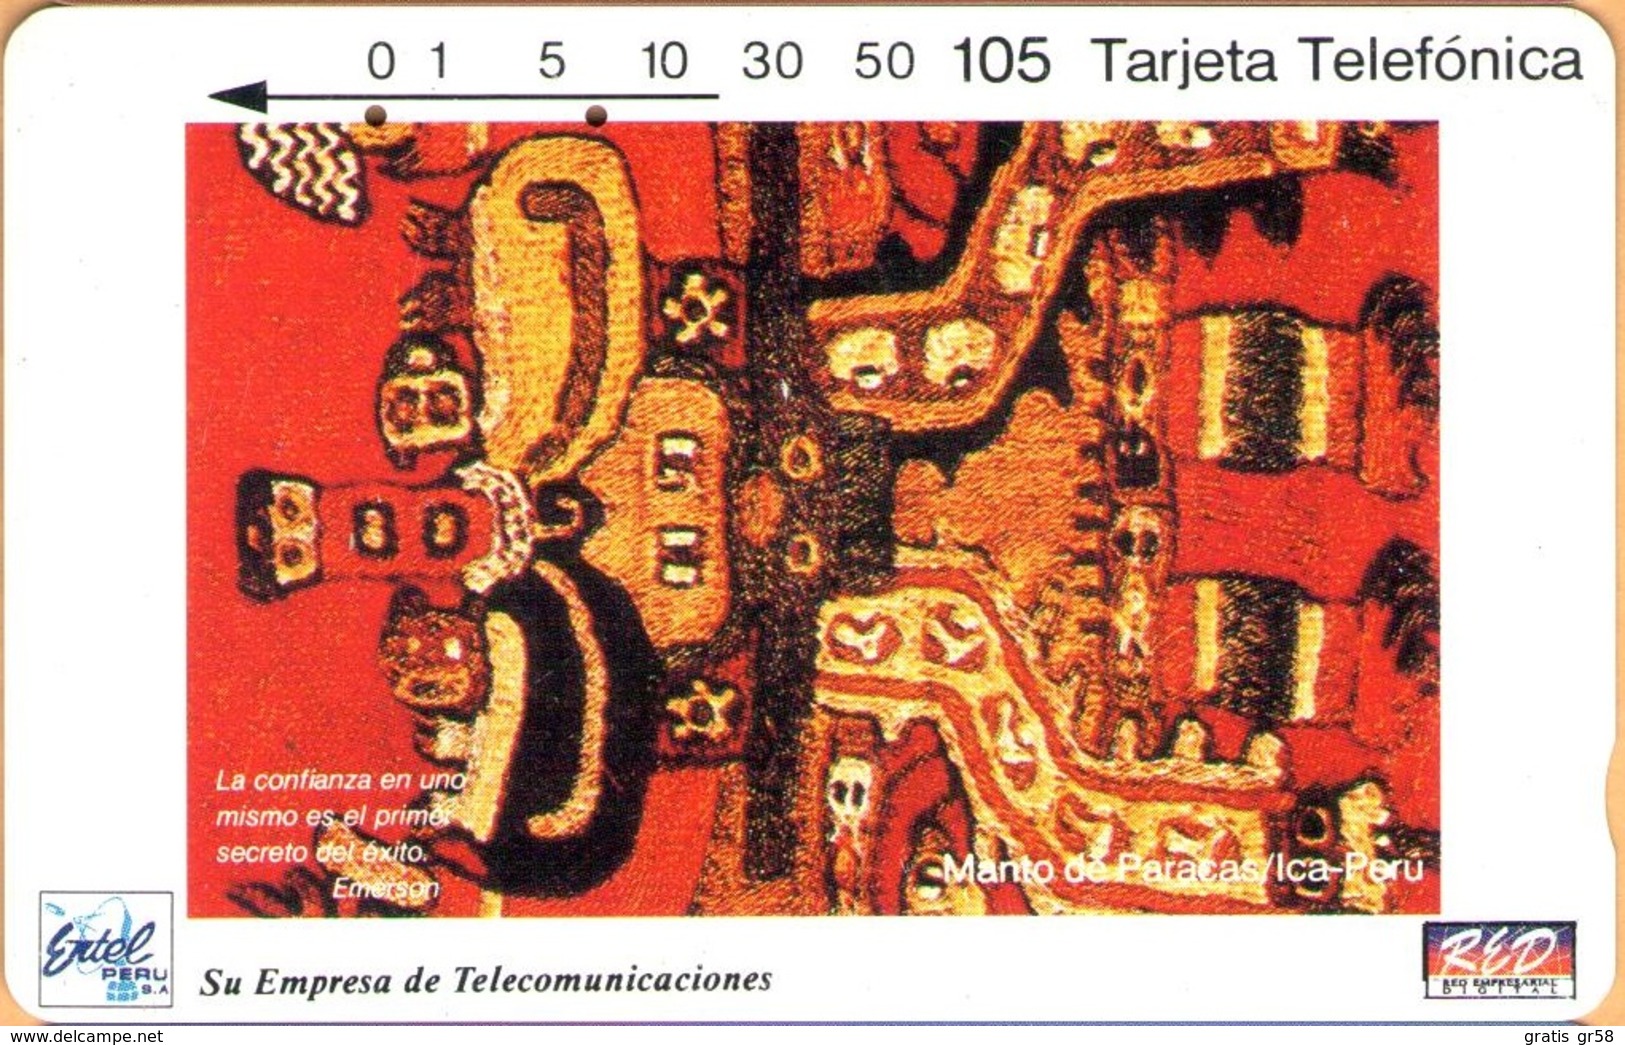 Peru - PE-M1A, Entel/RED, Segunda Serie Enero/94, Tamura, Manto Paracas, 105 U, 10.000ex, 1994, Used - Peru